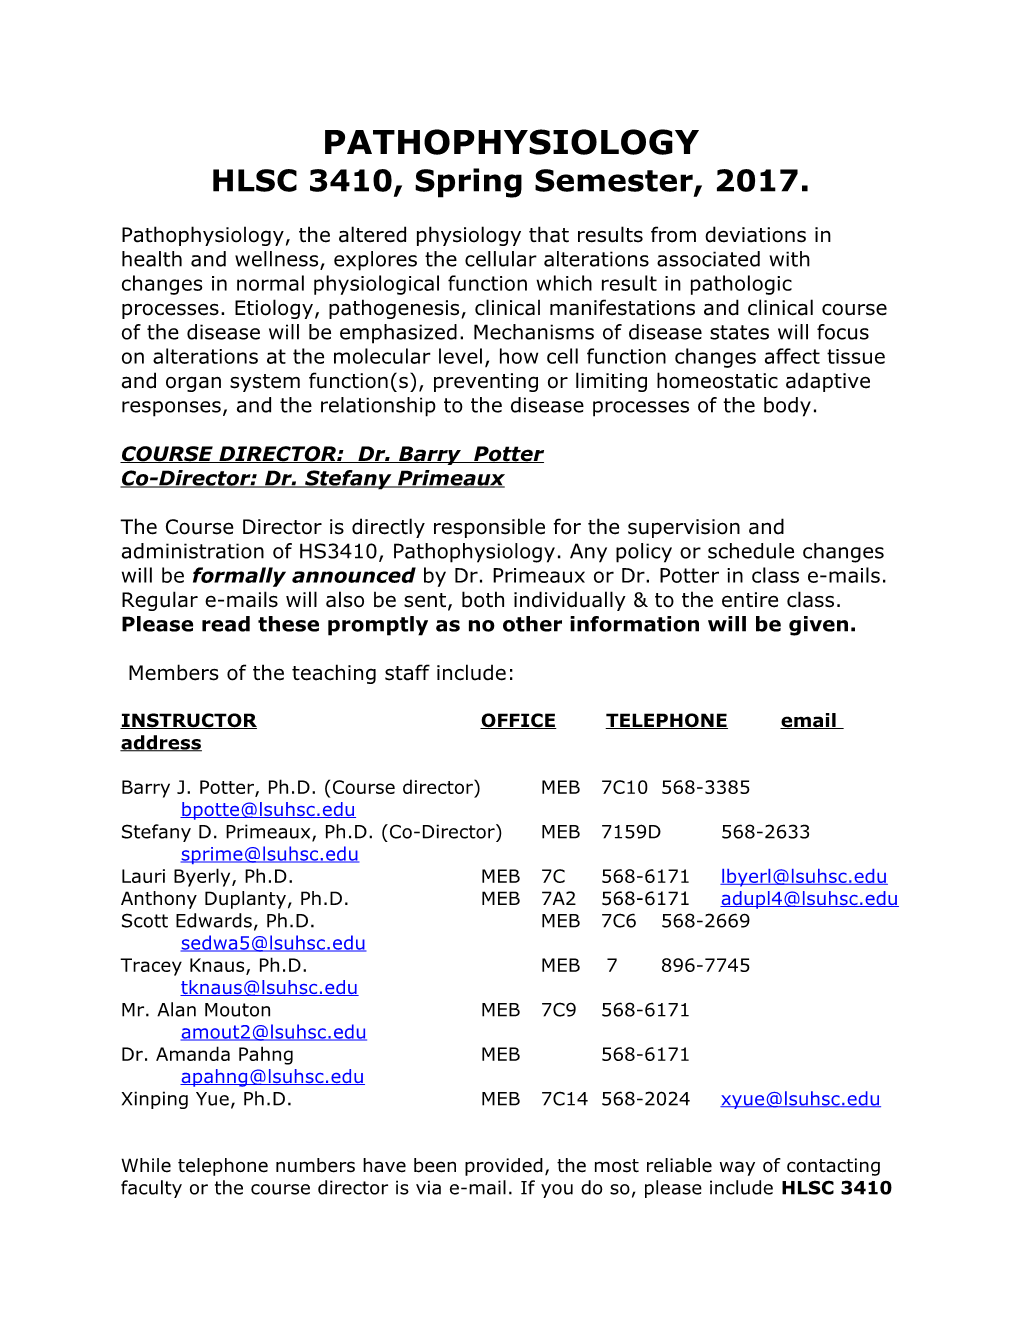 HLSC3410,Spring Semester,2017